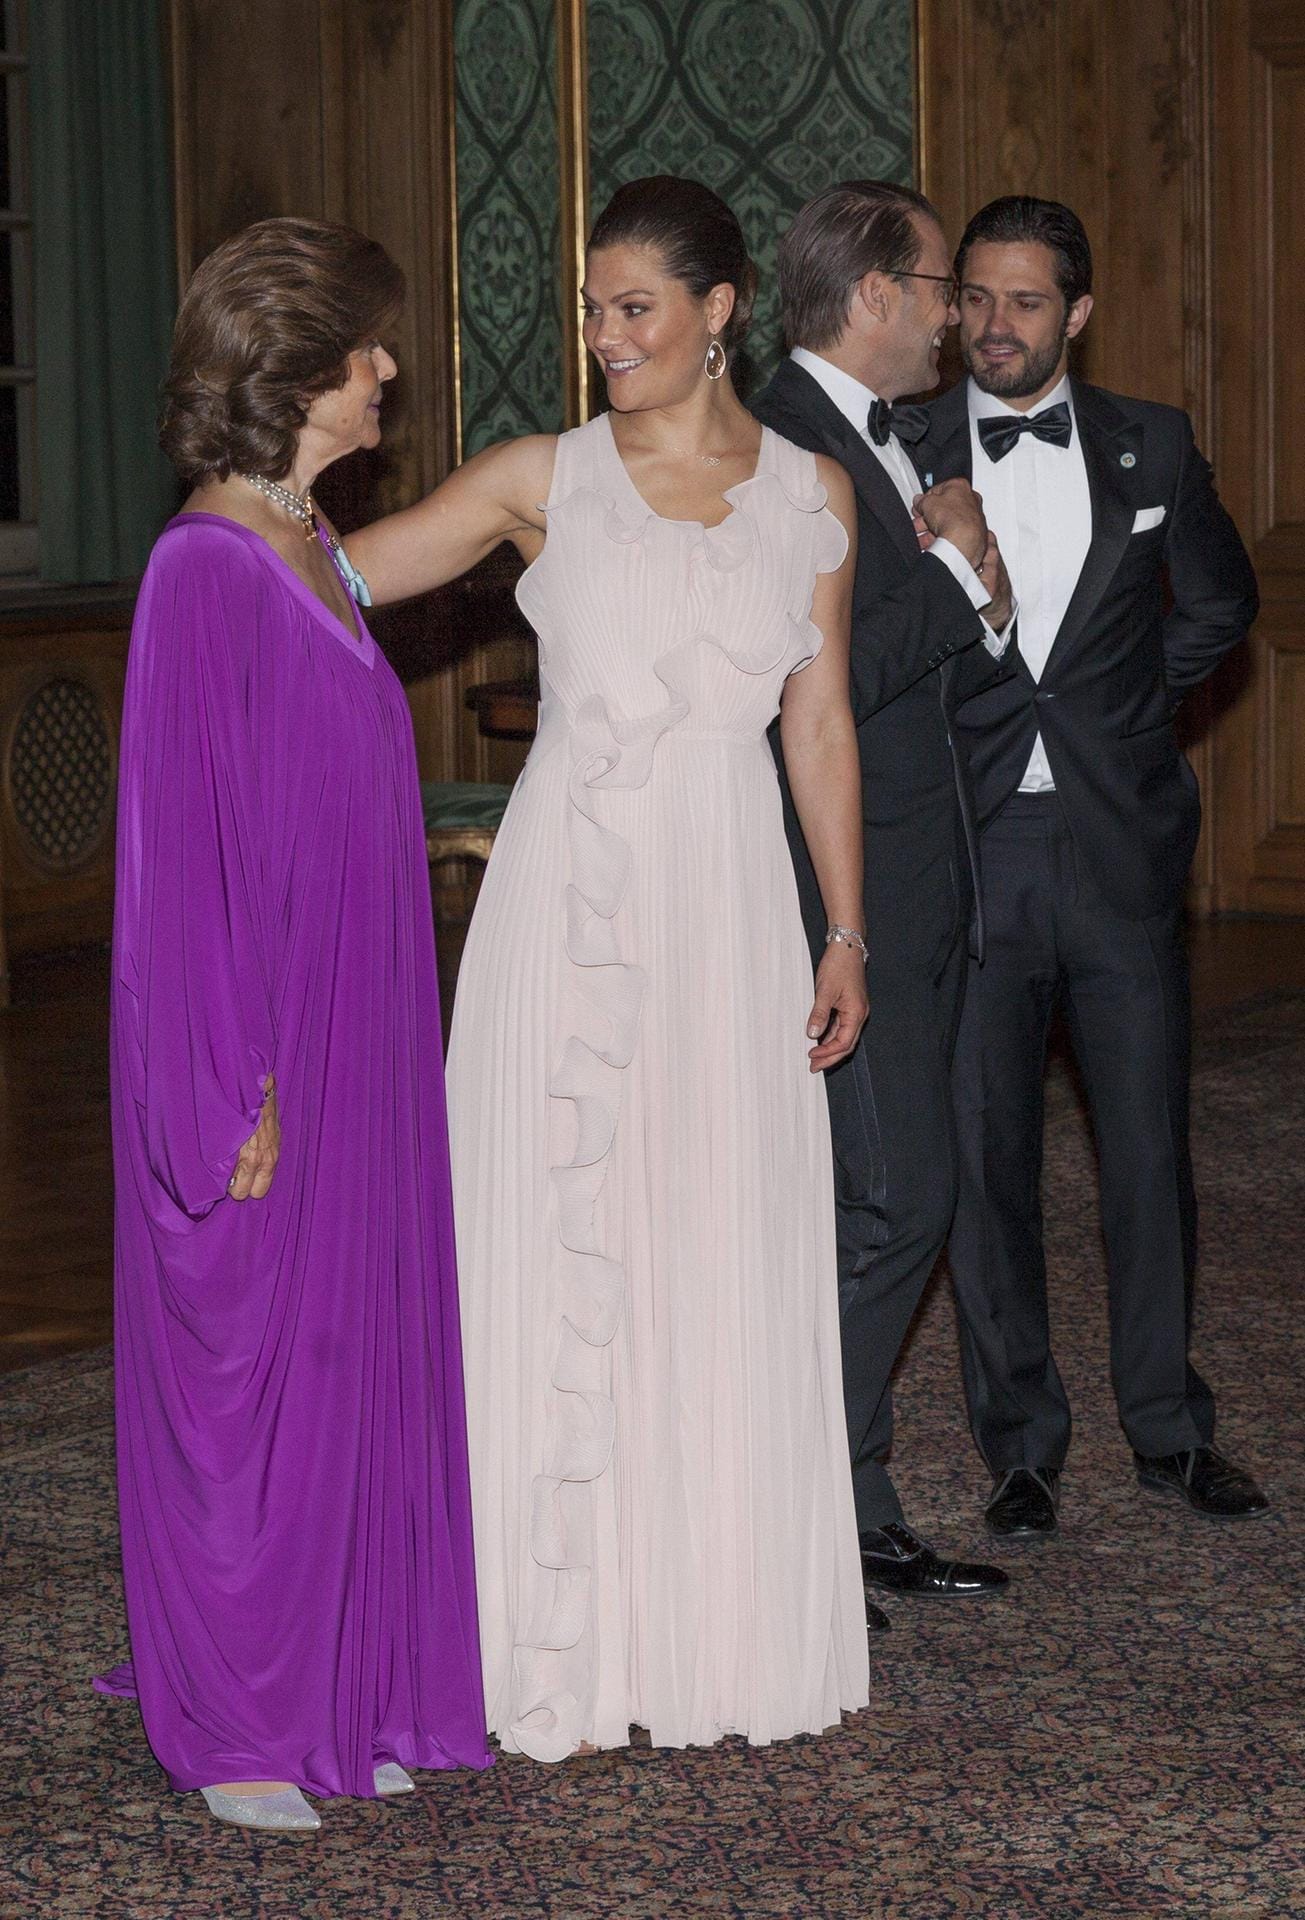 22. September 2017: Für das Schweden-Dinner im Palast wählte Victoria ein elegantes Kleid aus der Conscious-Kollektion von H&M.